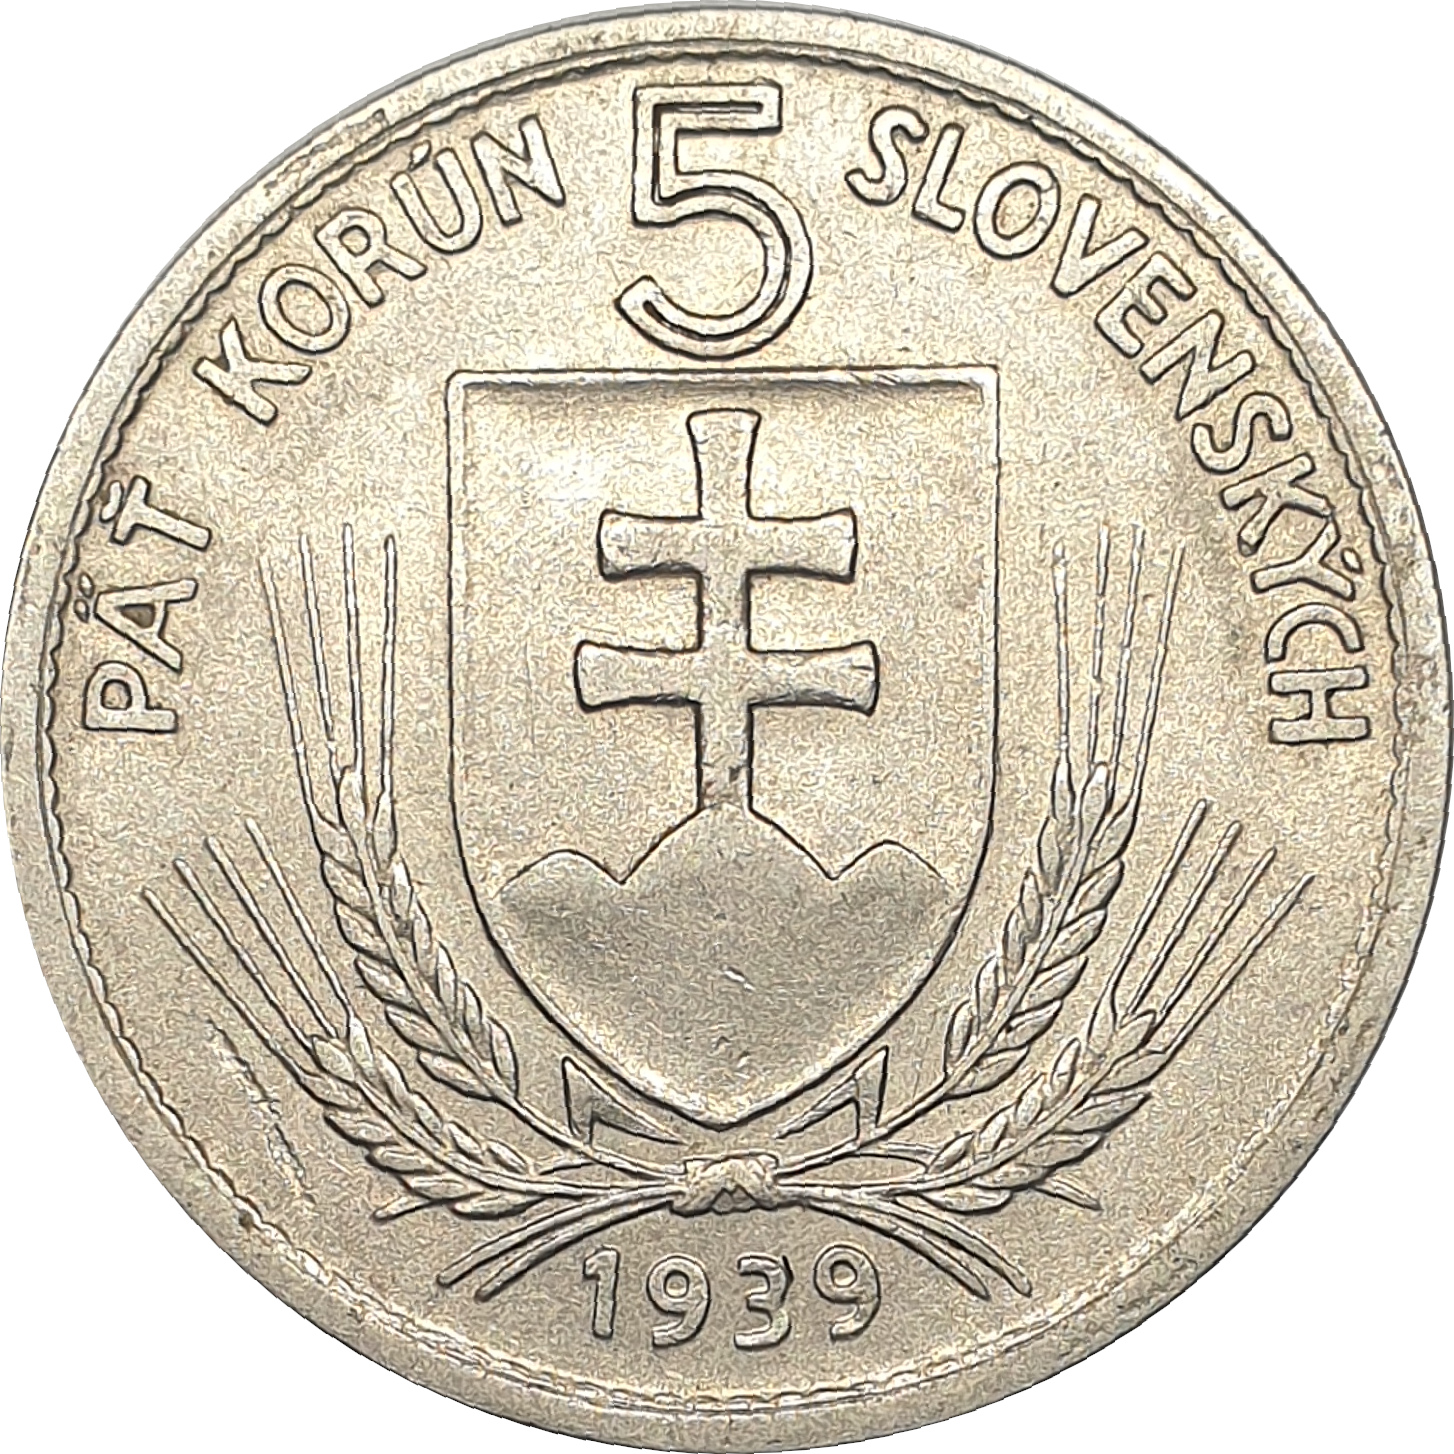 5 korun - Shield